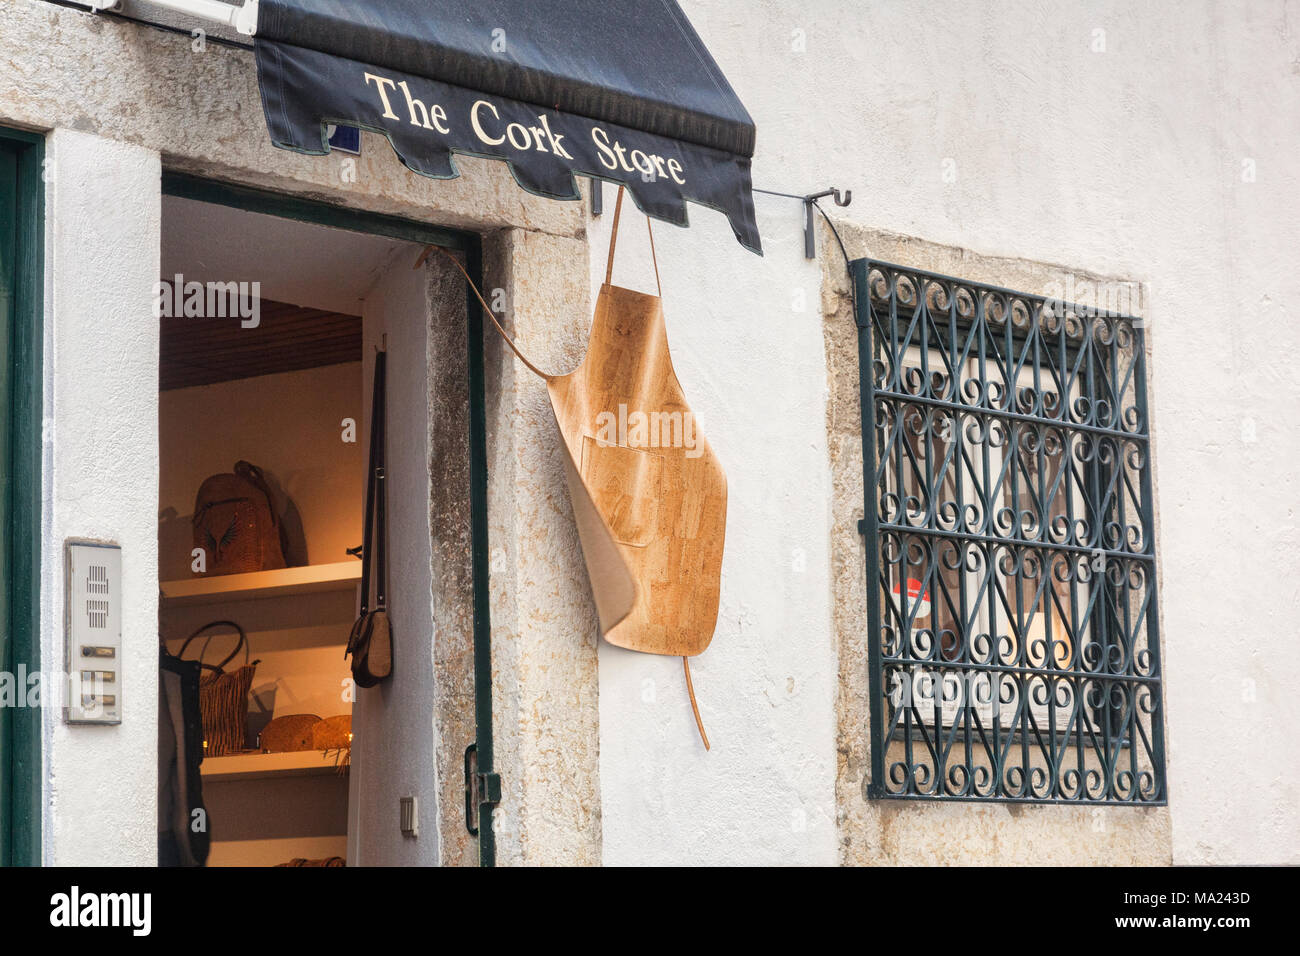 El 1 de marzo de 2018: Lisboa, Portugal - El almacén de corcho, con un delantal de corcho colgando fuera. Artículos de corcho son grandes recuerdos de Portugal, suelen hacerse individua Foto de stock